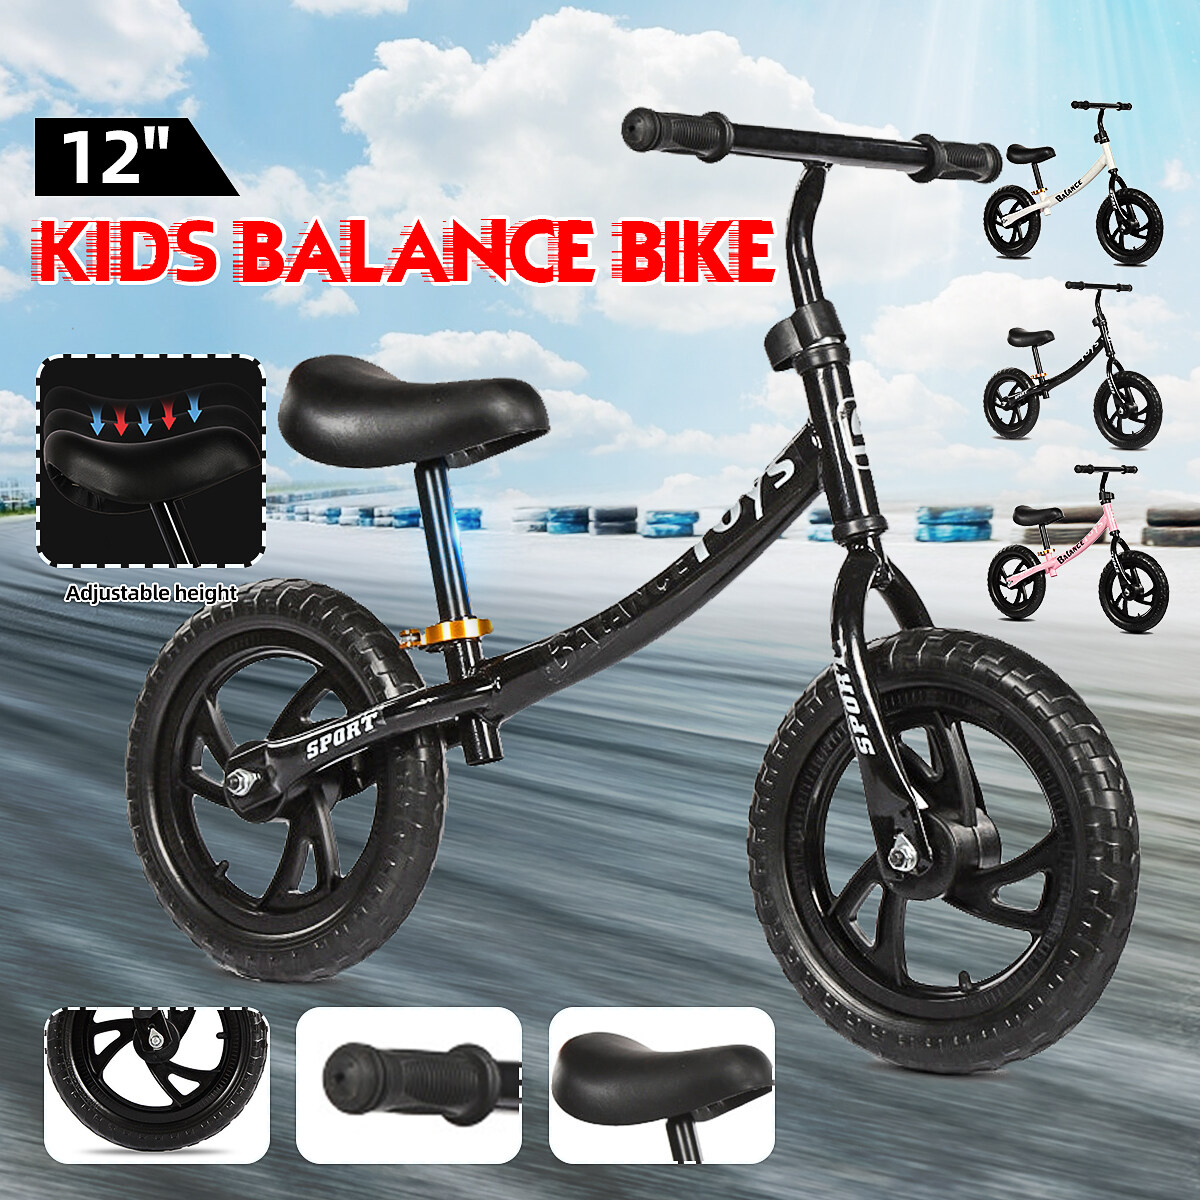 12 balance bike